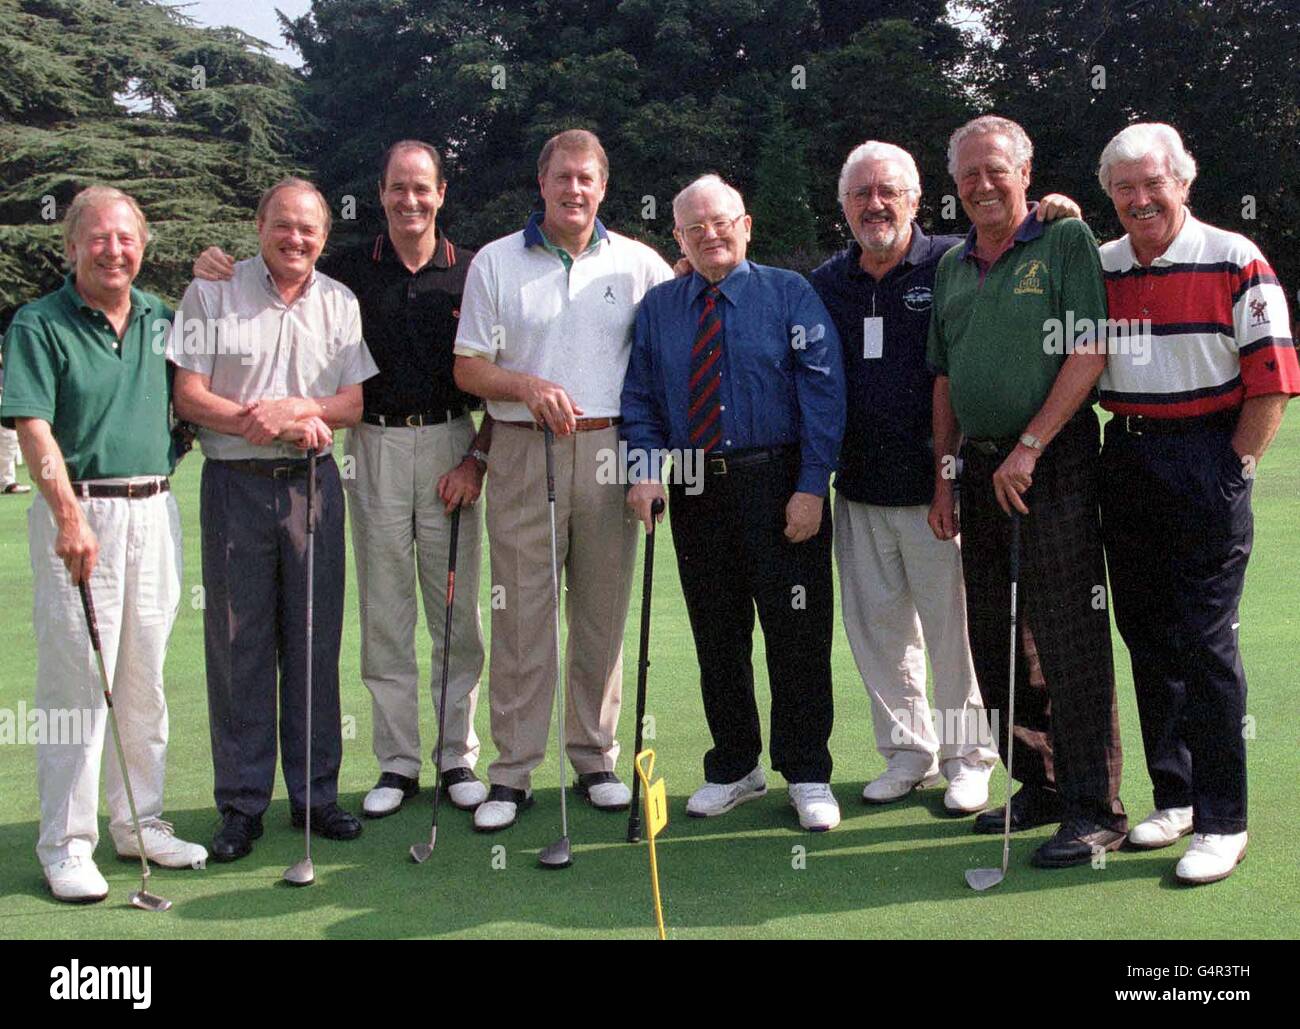 Harry Seacombe/Golf Classic Stock Photo